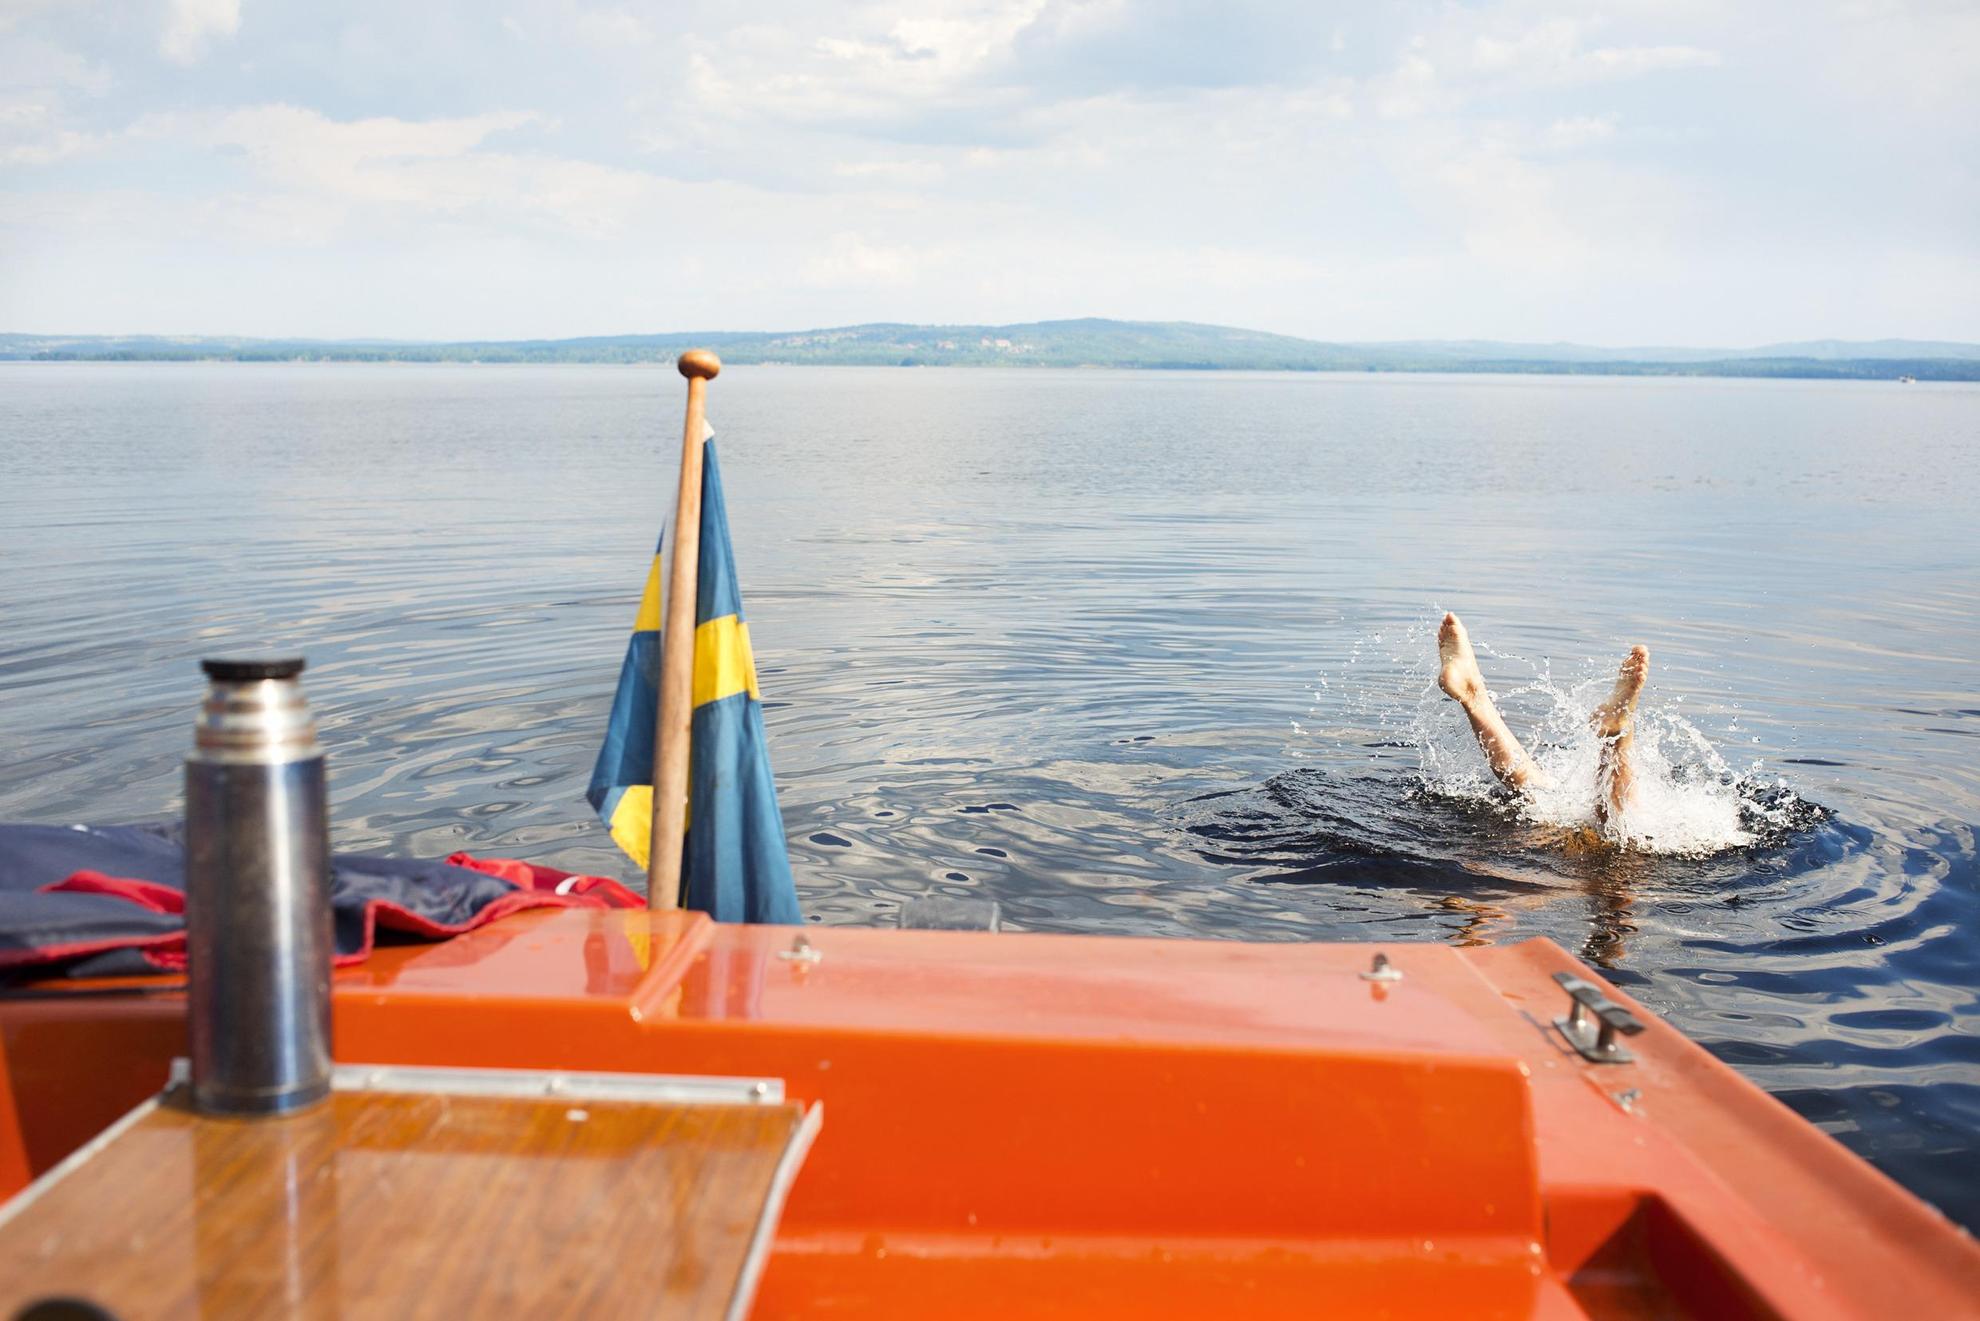 Das Heck eines kleinen orangefarbenen Bootes mit einer schwedischen Flagge.  Eine Person ist gerade aus dem Boot getaucht und man sieht nur die Beine im Wasser.